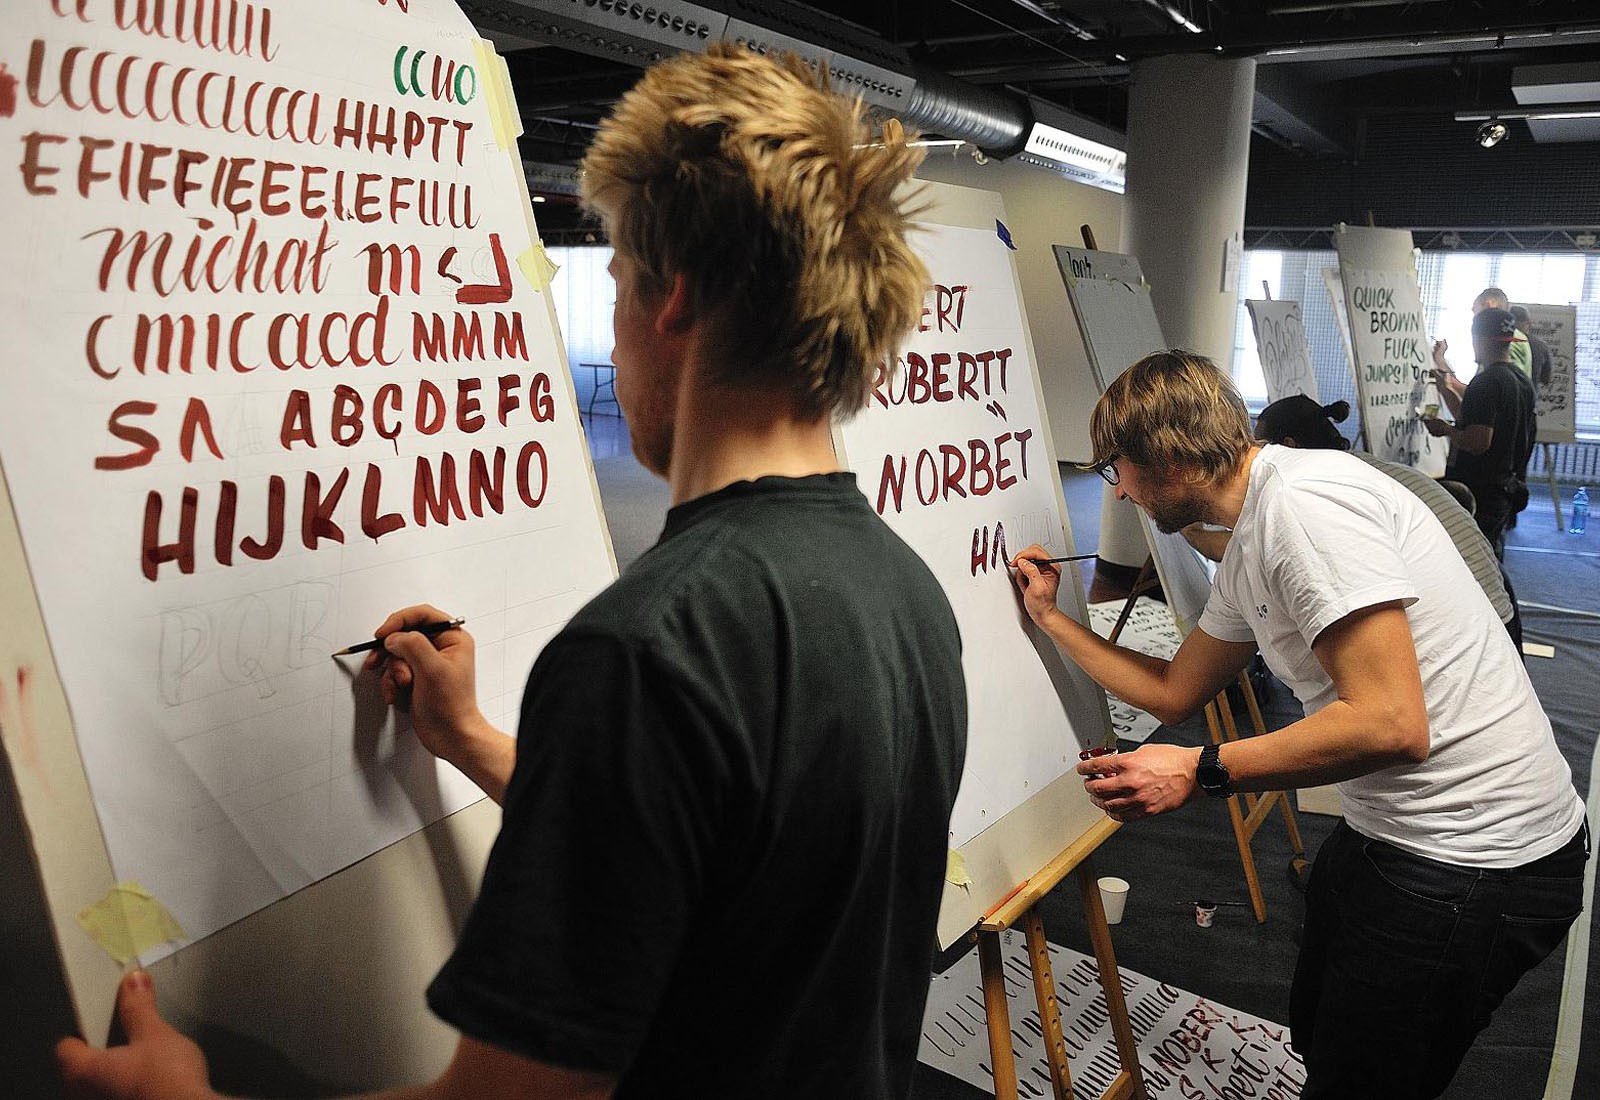 Warenhaus DT Bracia Jablkowscy Sign Painters Workshop im Werbungen-Malen | Sign Painters - Workshop und Filmpremiere | Backstage